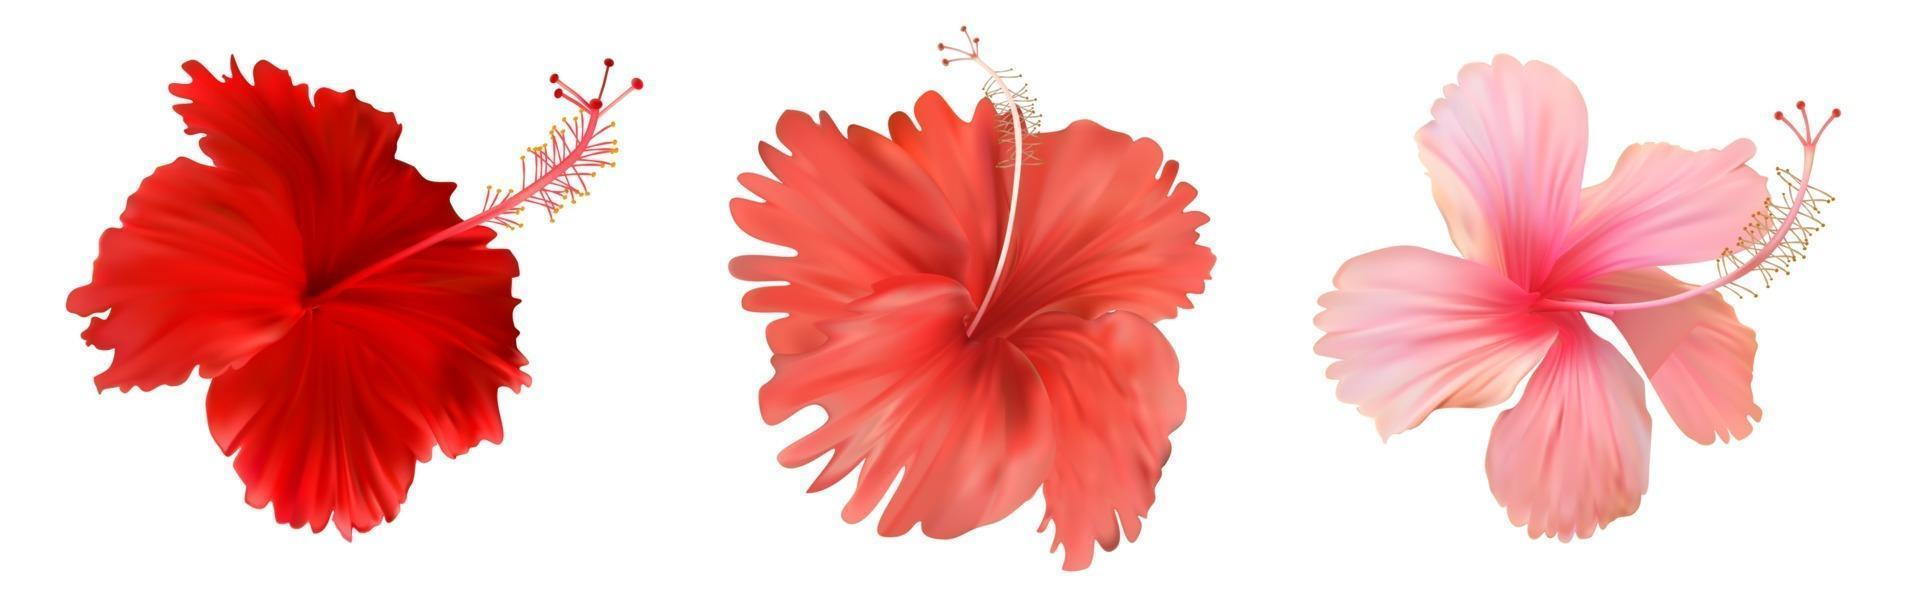 rosa Hibiskusblume lokalisiert auf weißem Hintergrund vektor